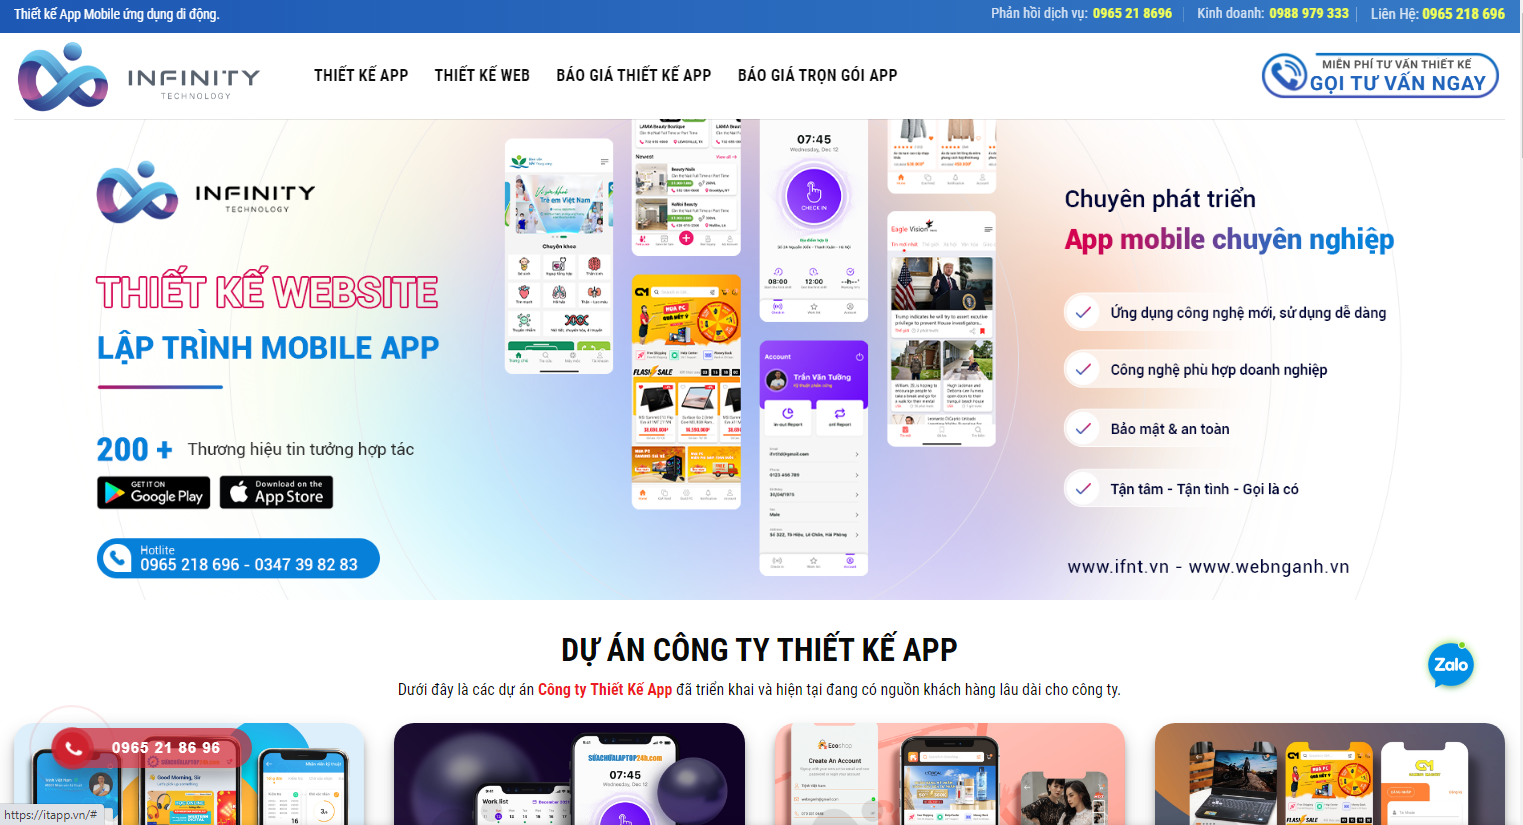 Itapp.vn sở hữu kho app đa dạng giúp khách hàng dễ dàng lựa chọn mẫu thiết kế